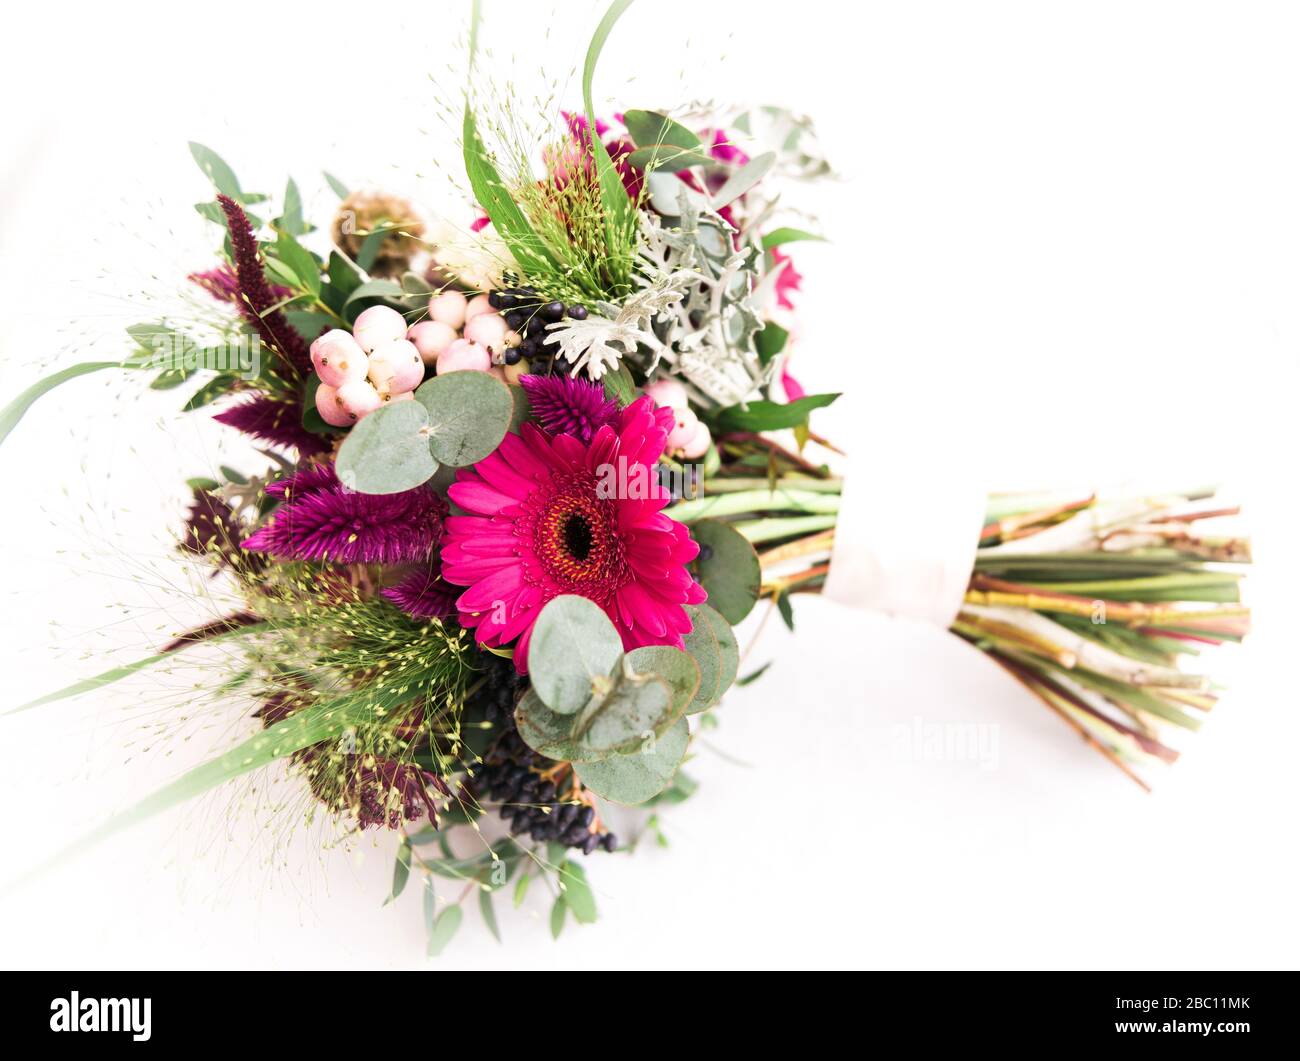 Schneiden Hochzeit Blumen Displays und Blumensträuße. Towcester, England, Großbritannien Stockfoto